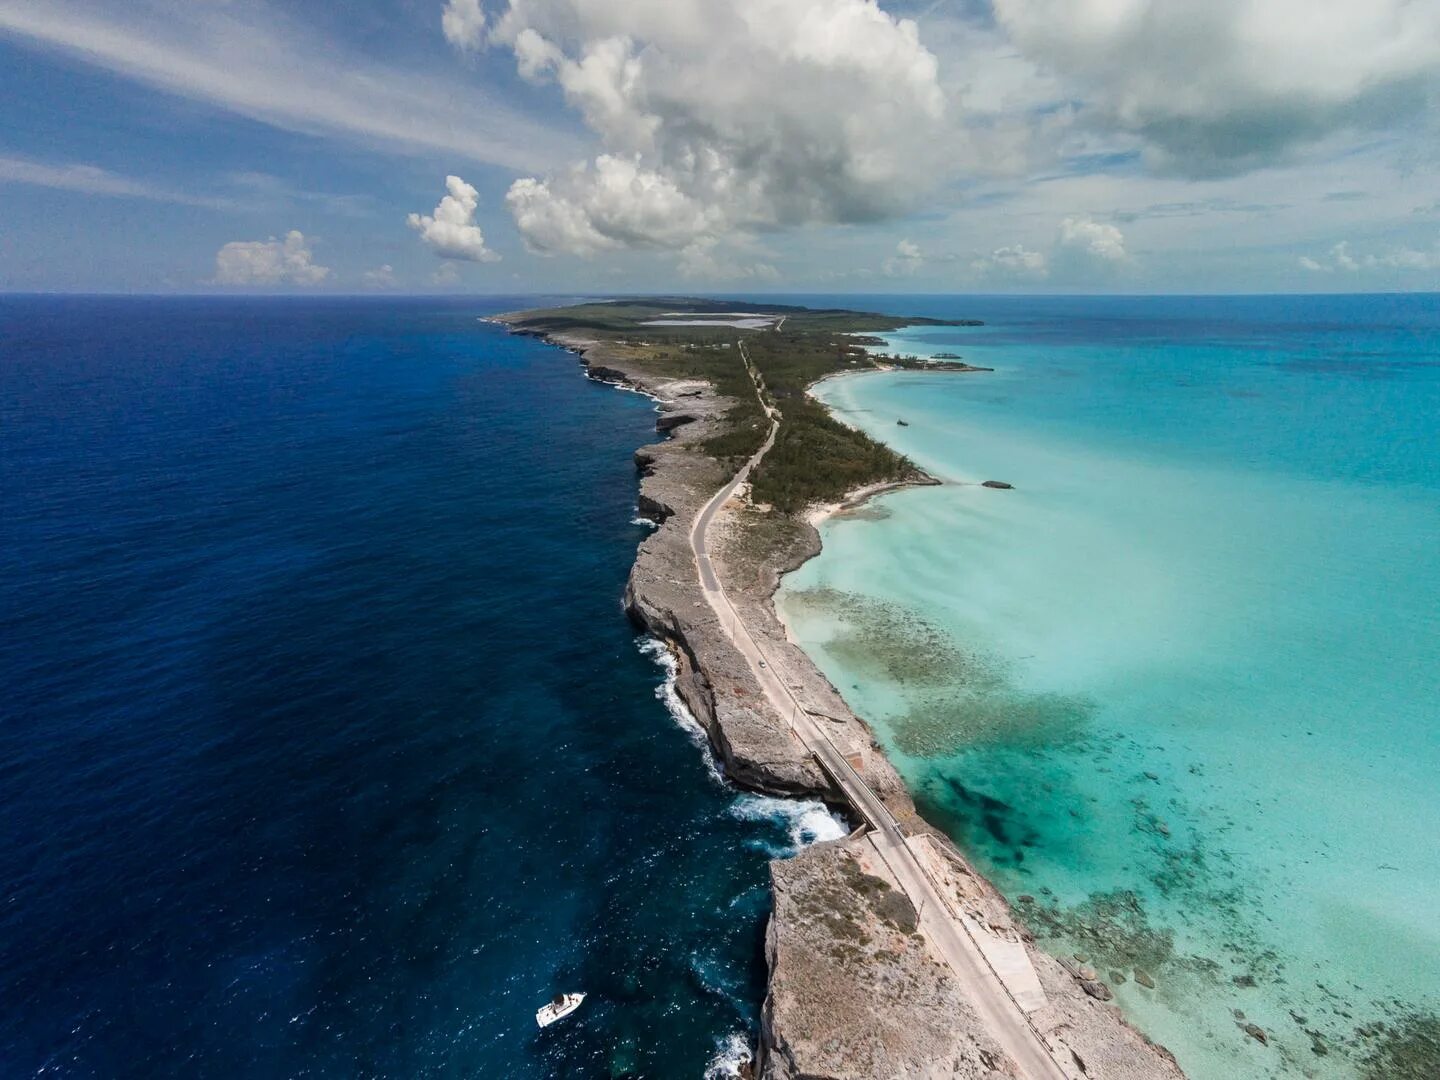 Встречаются 2 океана. Эльютера Багамские острова. Остров Эльютера. Карибское море Атлантический океан. Атлантический океан Багамские острова.